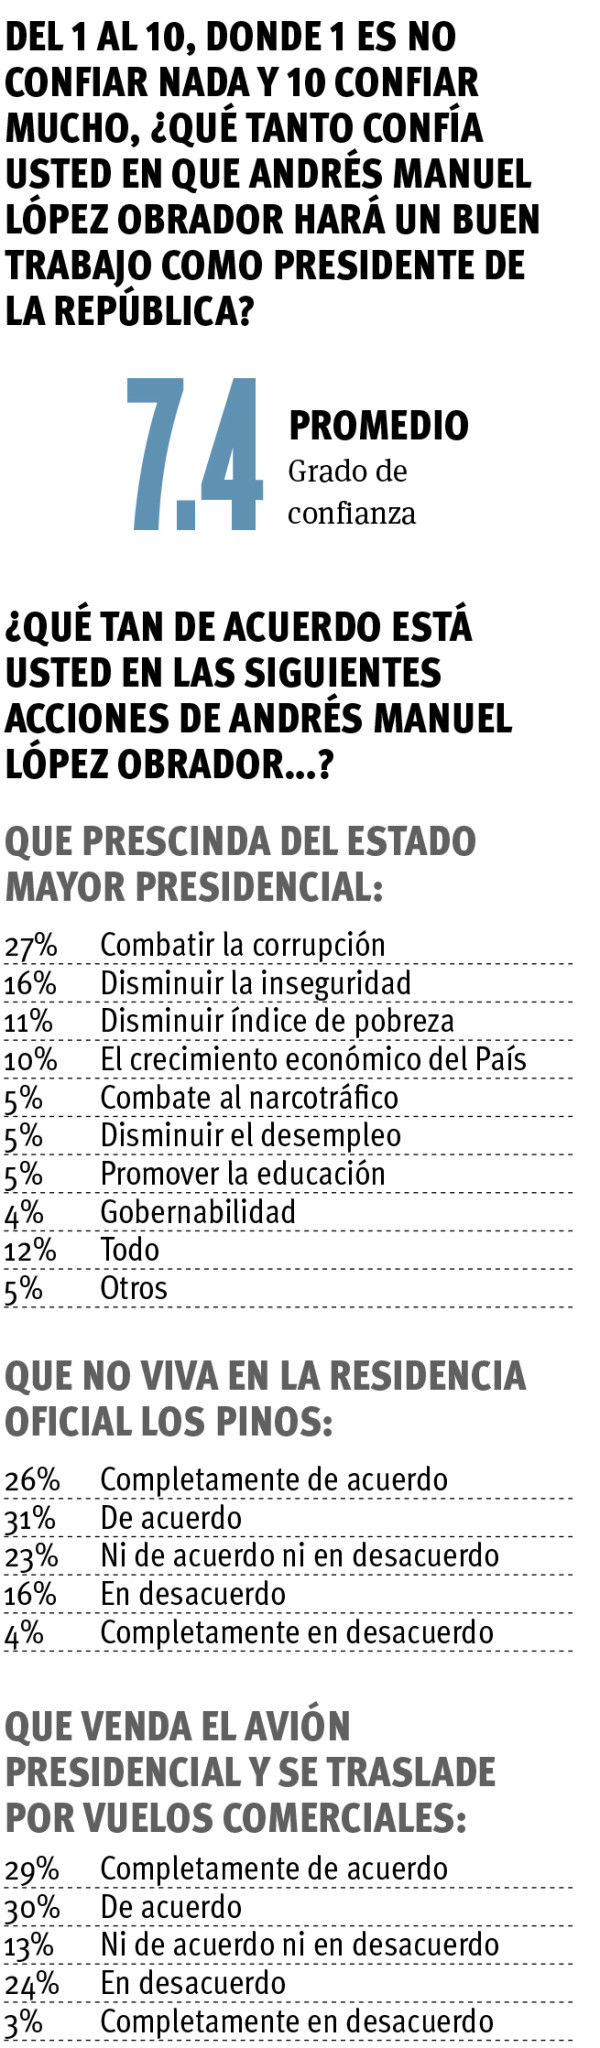 $!55% de Coahuilenses encuestados dan voto de confianza a AMLO; Vangdata agradece la confianza de los ciudadanos